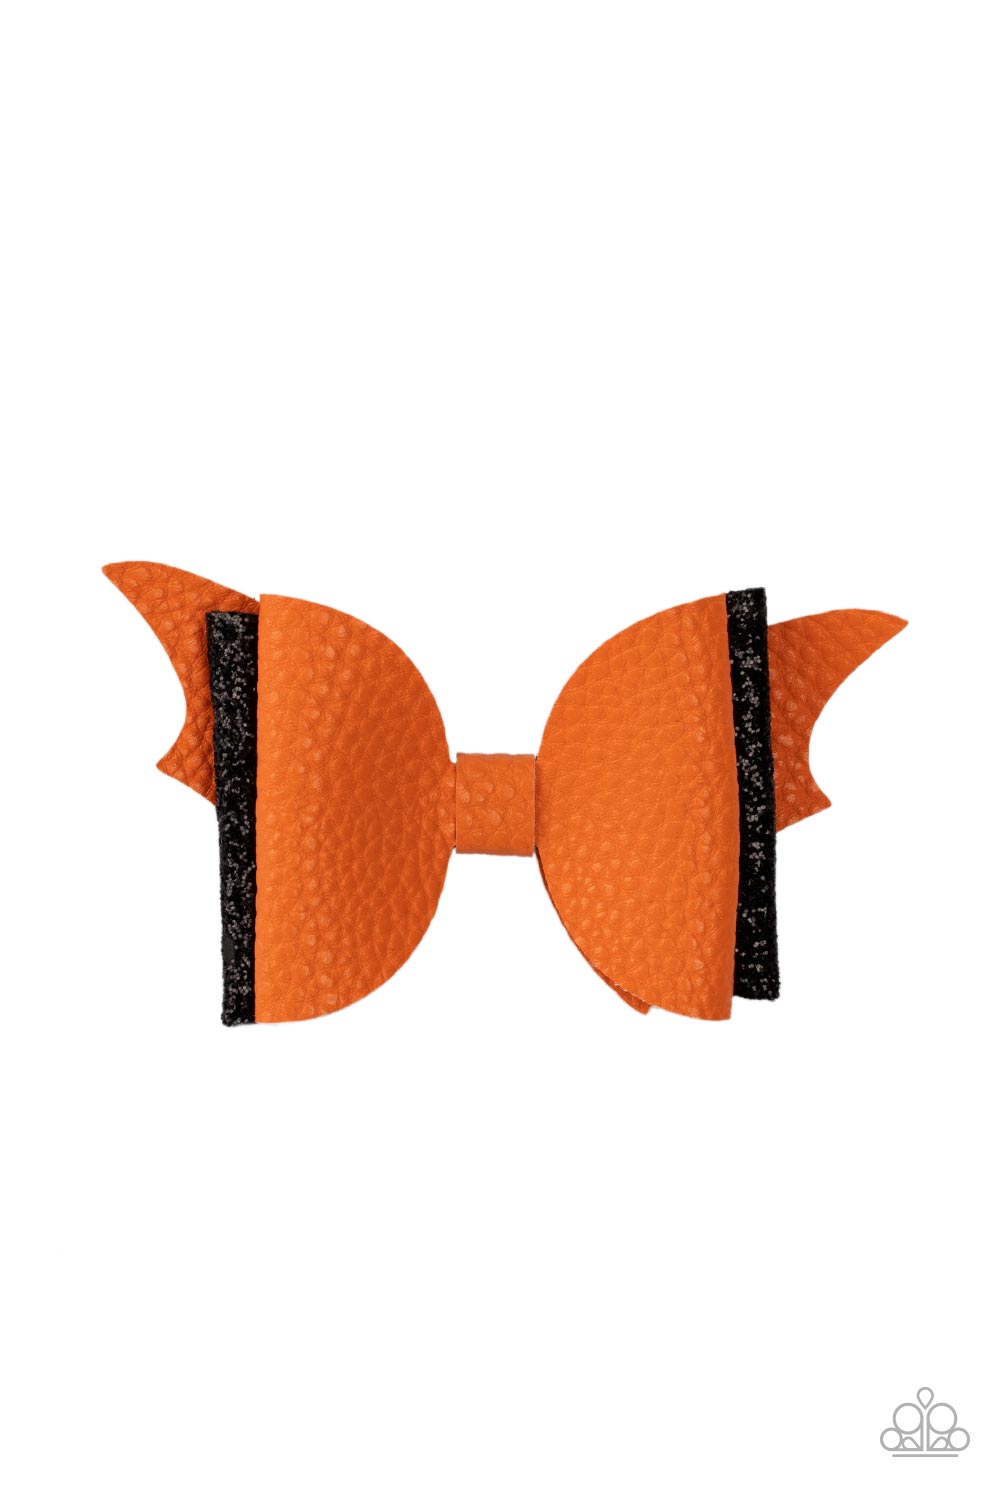 SPOOK-taculer, SPOOK-taculer Hair Clip (Orange, Black)